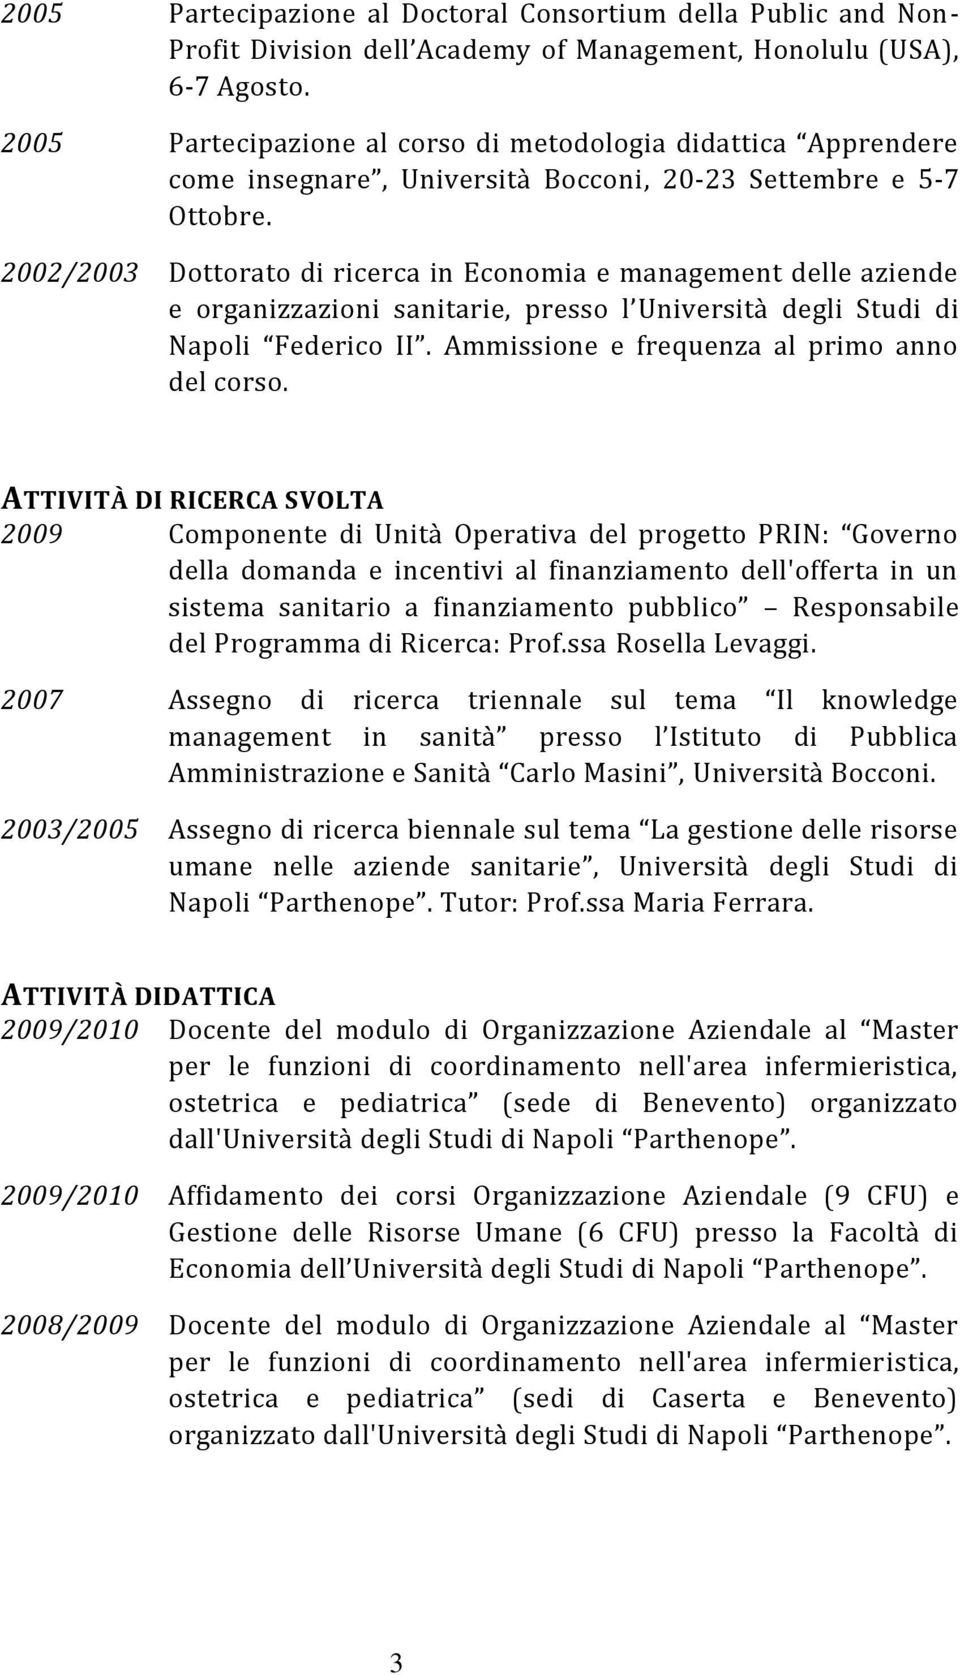 2002/2003 Dottorato di ricerca in Economia e management delle aziende e organizzazioni sanitarie, presso l Università degli Studi di Napoli Federico II. Ammissione e frequenza al primo anno del corso.